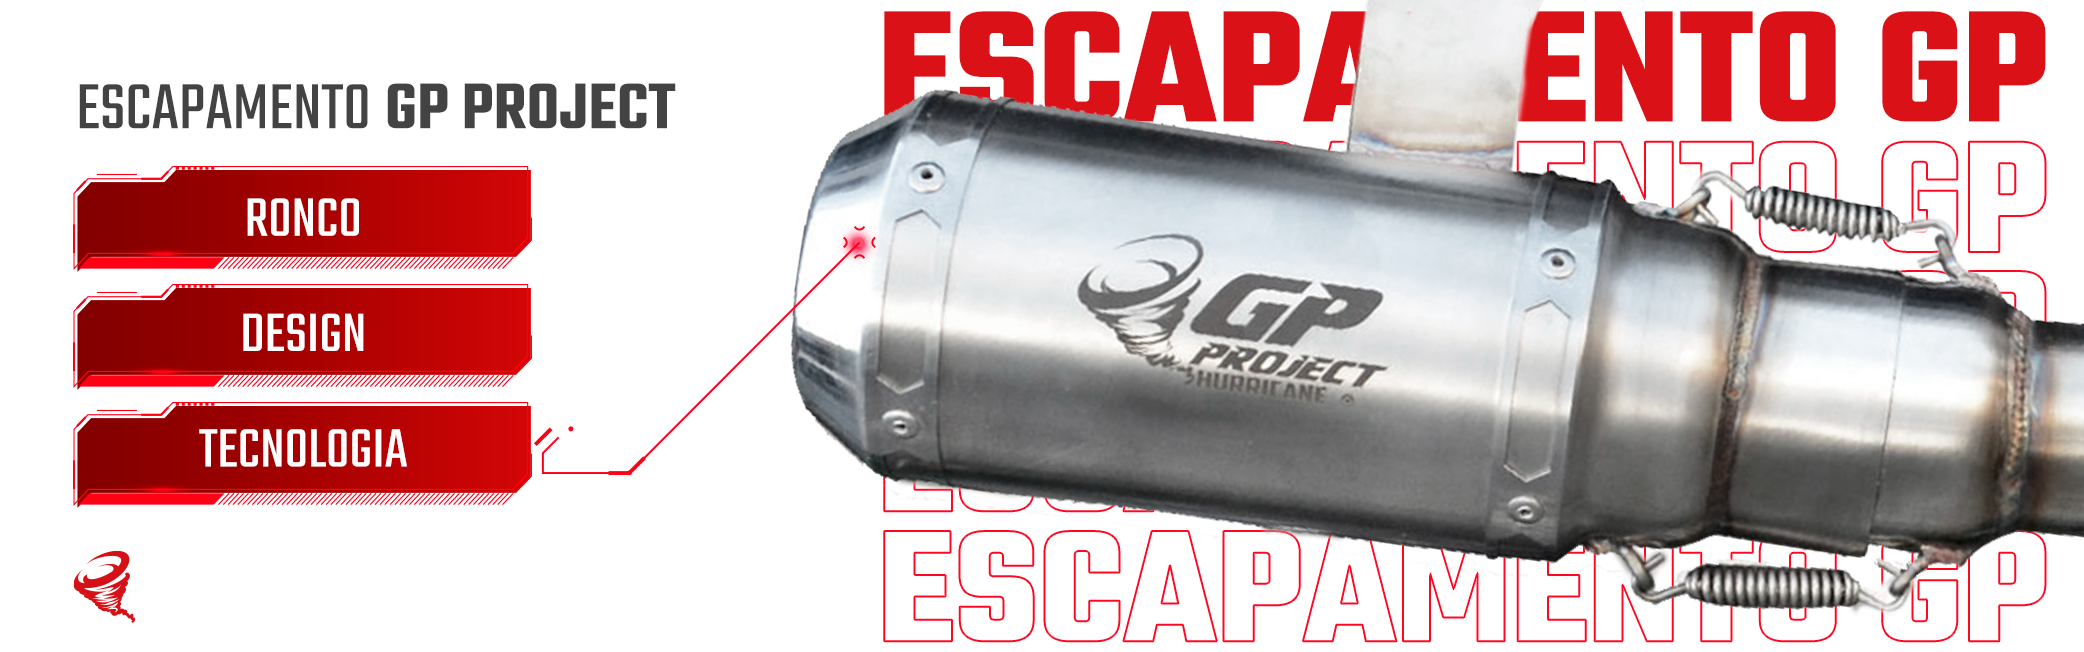 Imagem do slide Escapamento GP Project - 